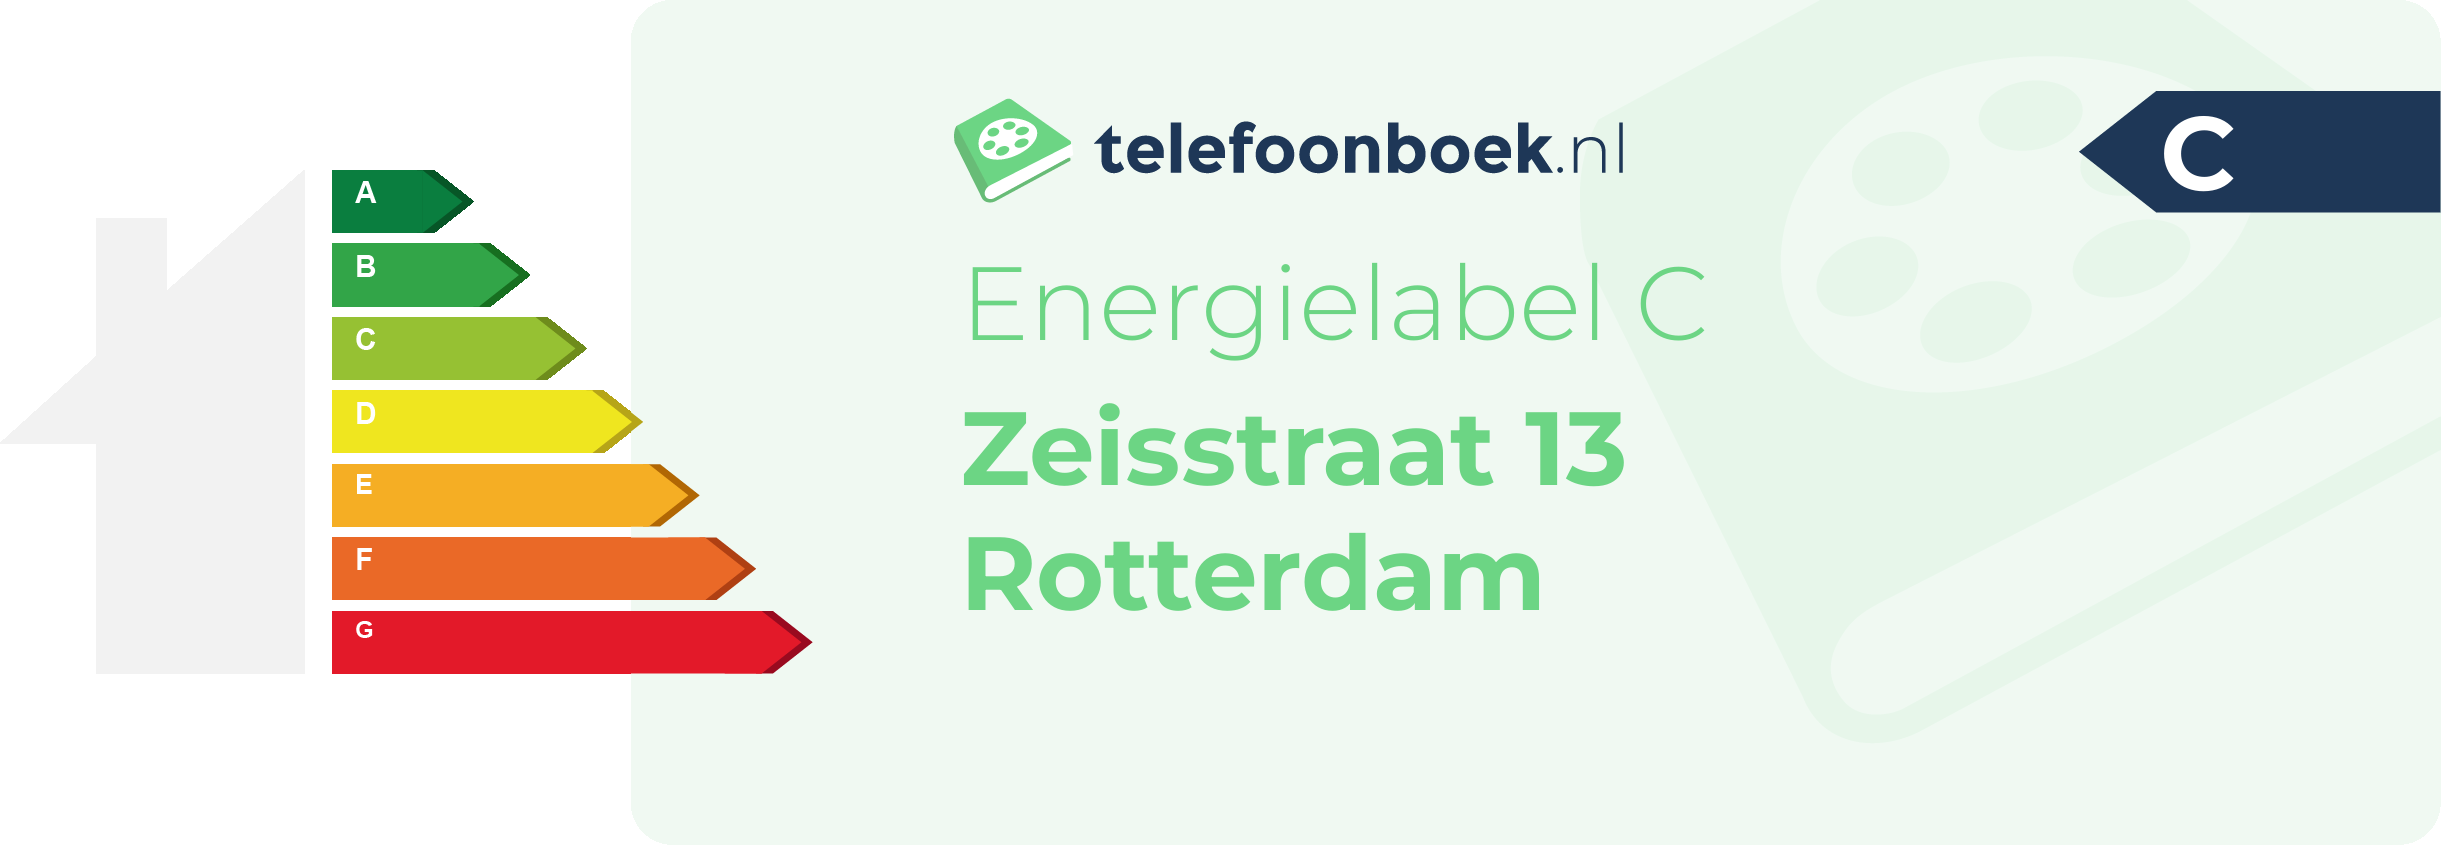 Energielabel Zeisstraat 13 Rotterdam